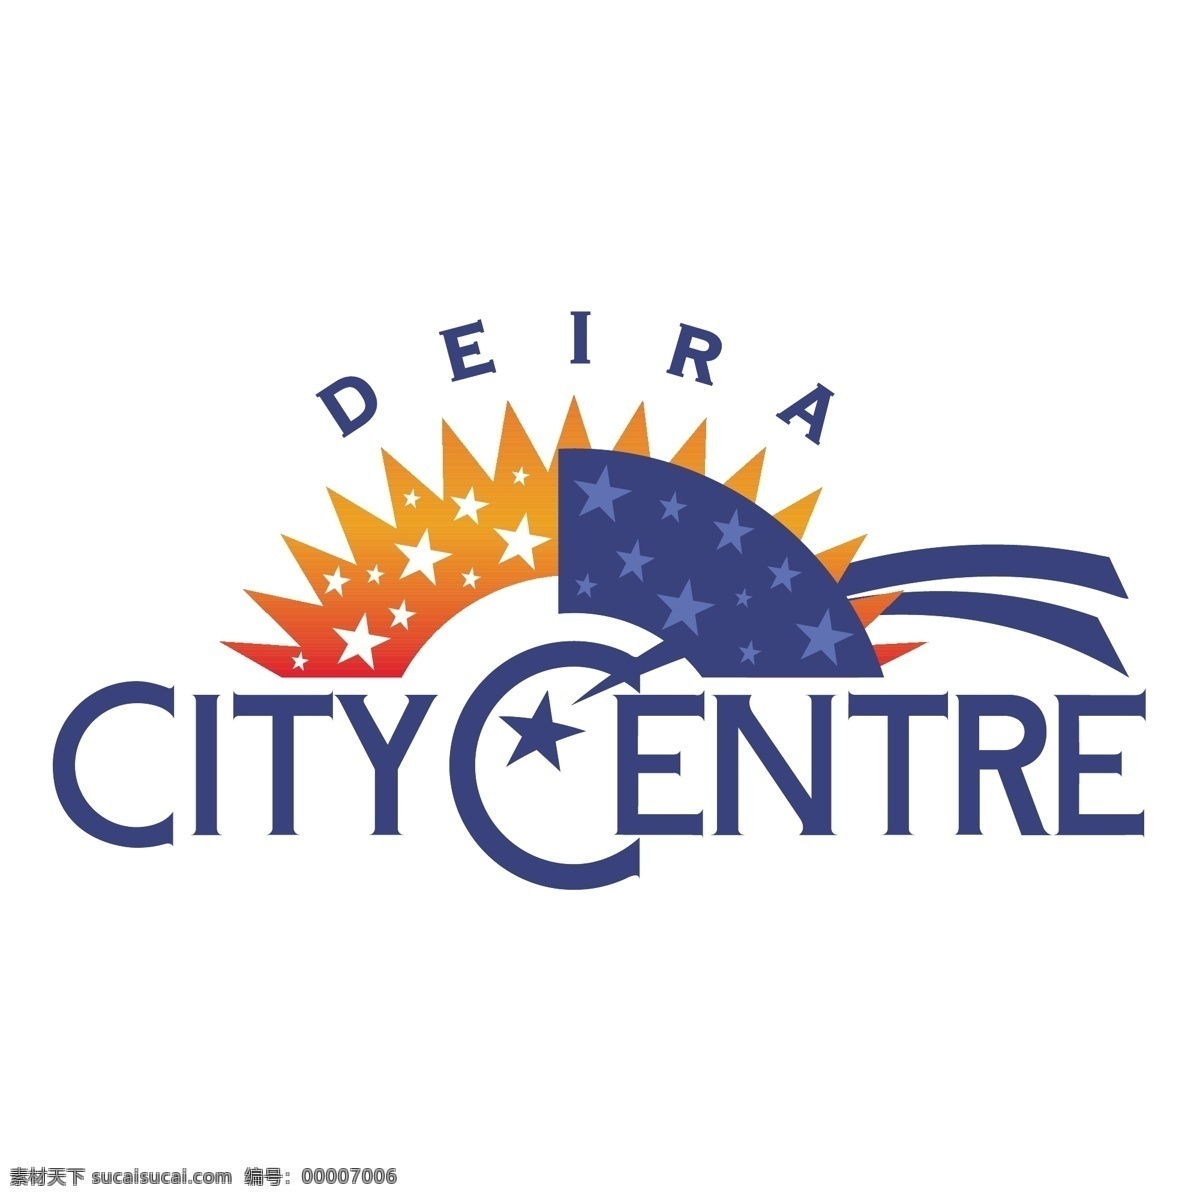 城市 中心 免费 标志 psd源文件 logo设计